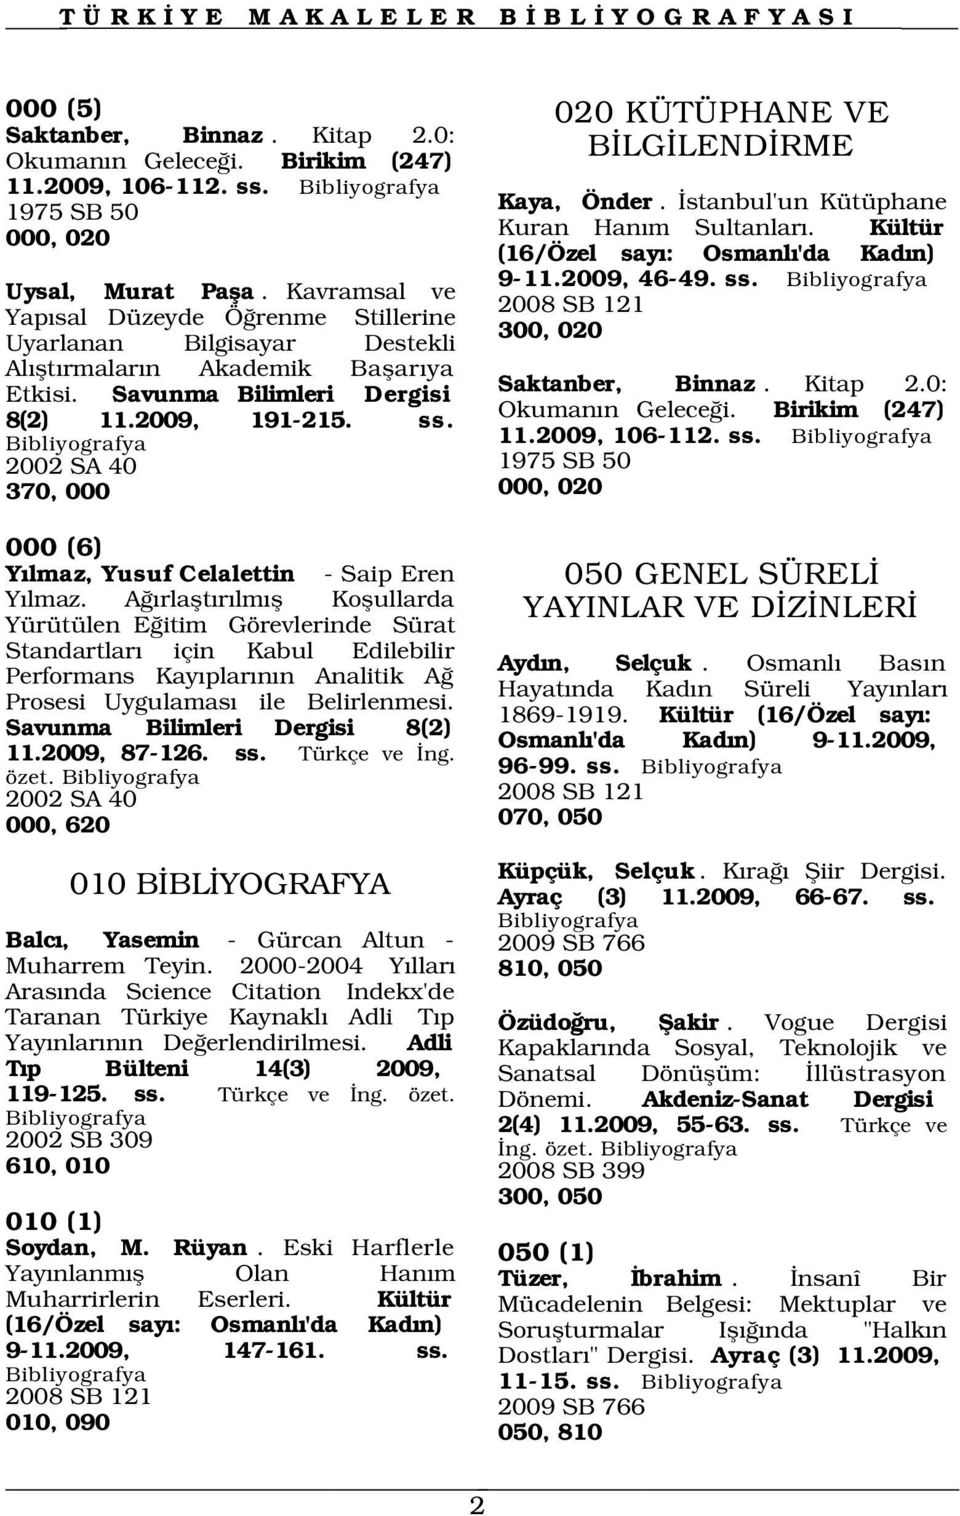 2002 SA 40 370, 000 Kaya, Önder. stanbul'un Kütüphane Kuran Han m Sultanlar. Kültür (16/Özel say : Osmanl 'da Kad n) 9-11.2009, 46-49. ss. 2008 SB 121 300, 020 Saktanber, Binnaz. Kitap 2.